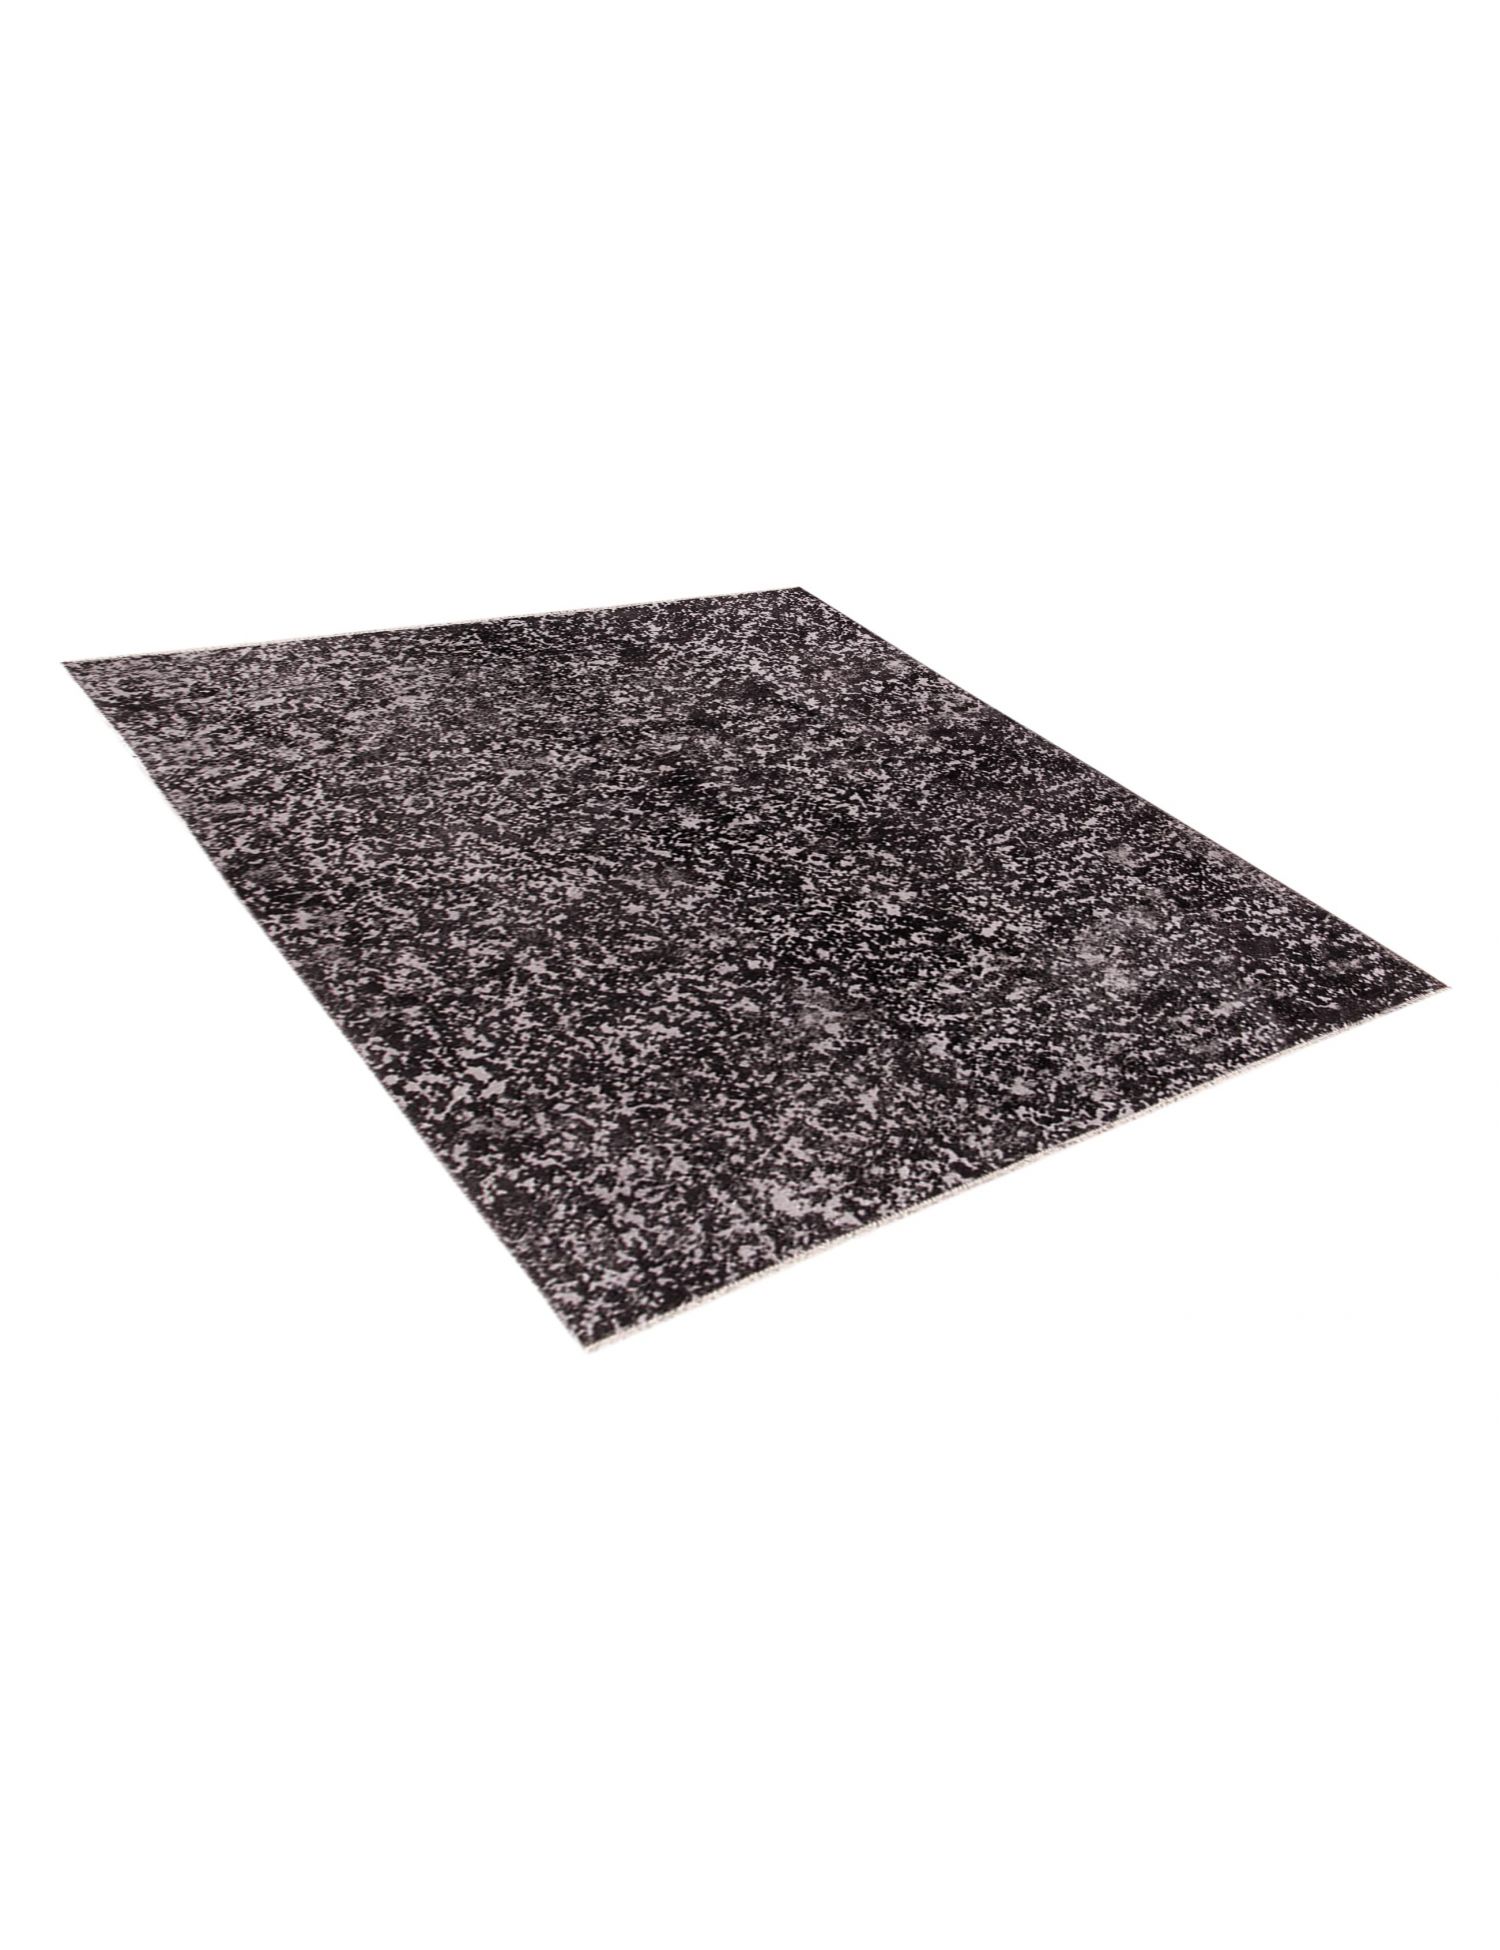 Persian Vintage Carpet  black <br/>206 x 168 cm